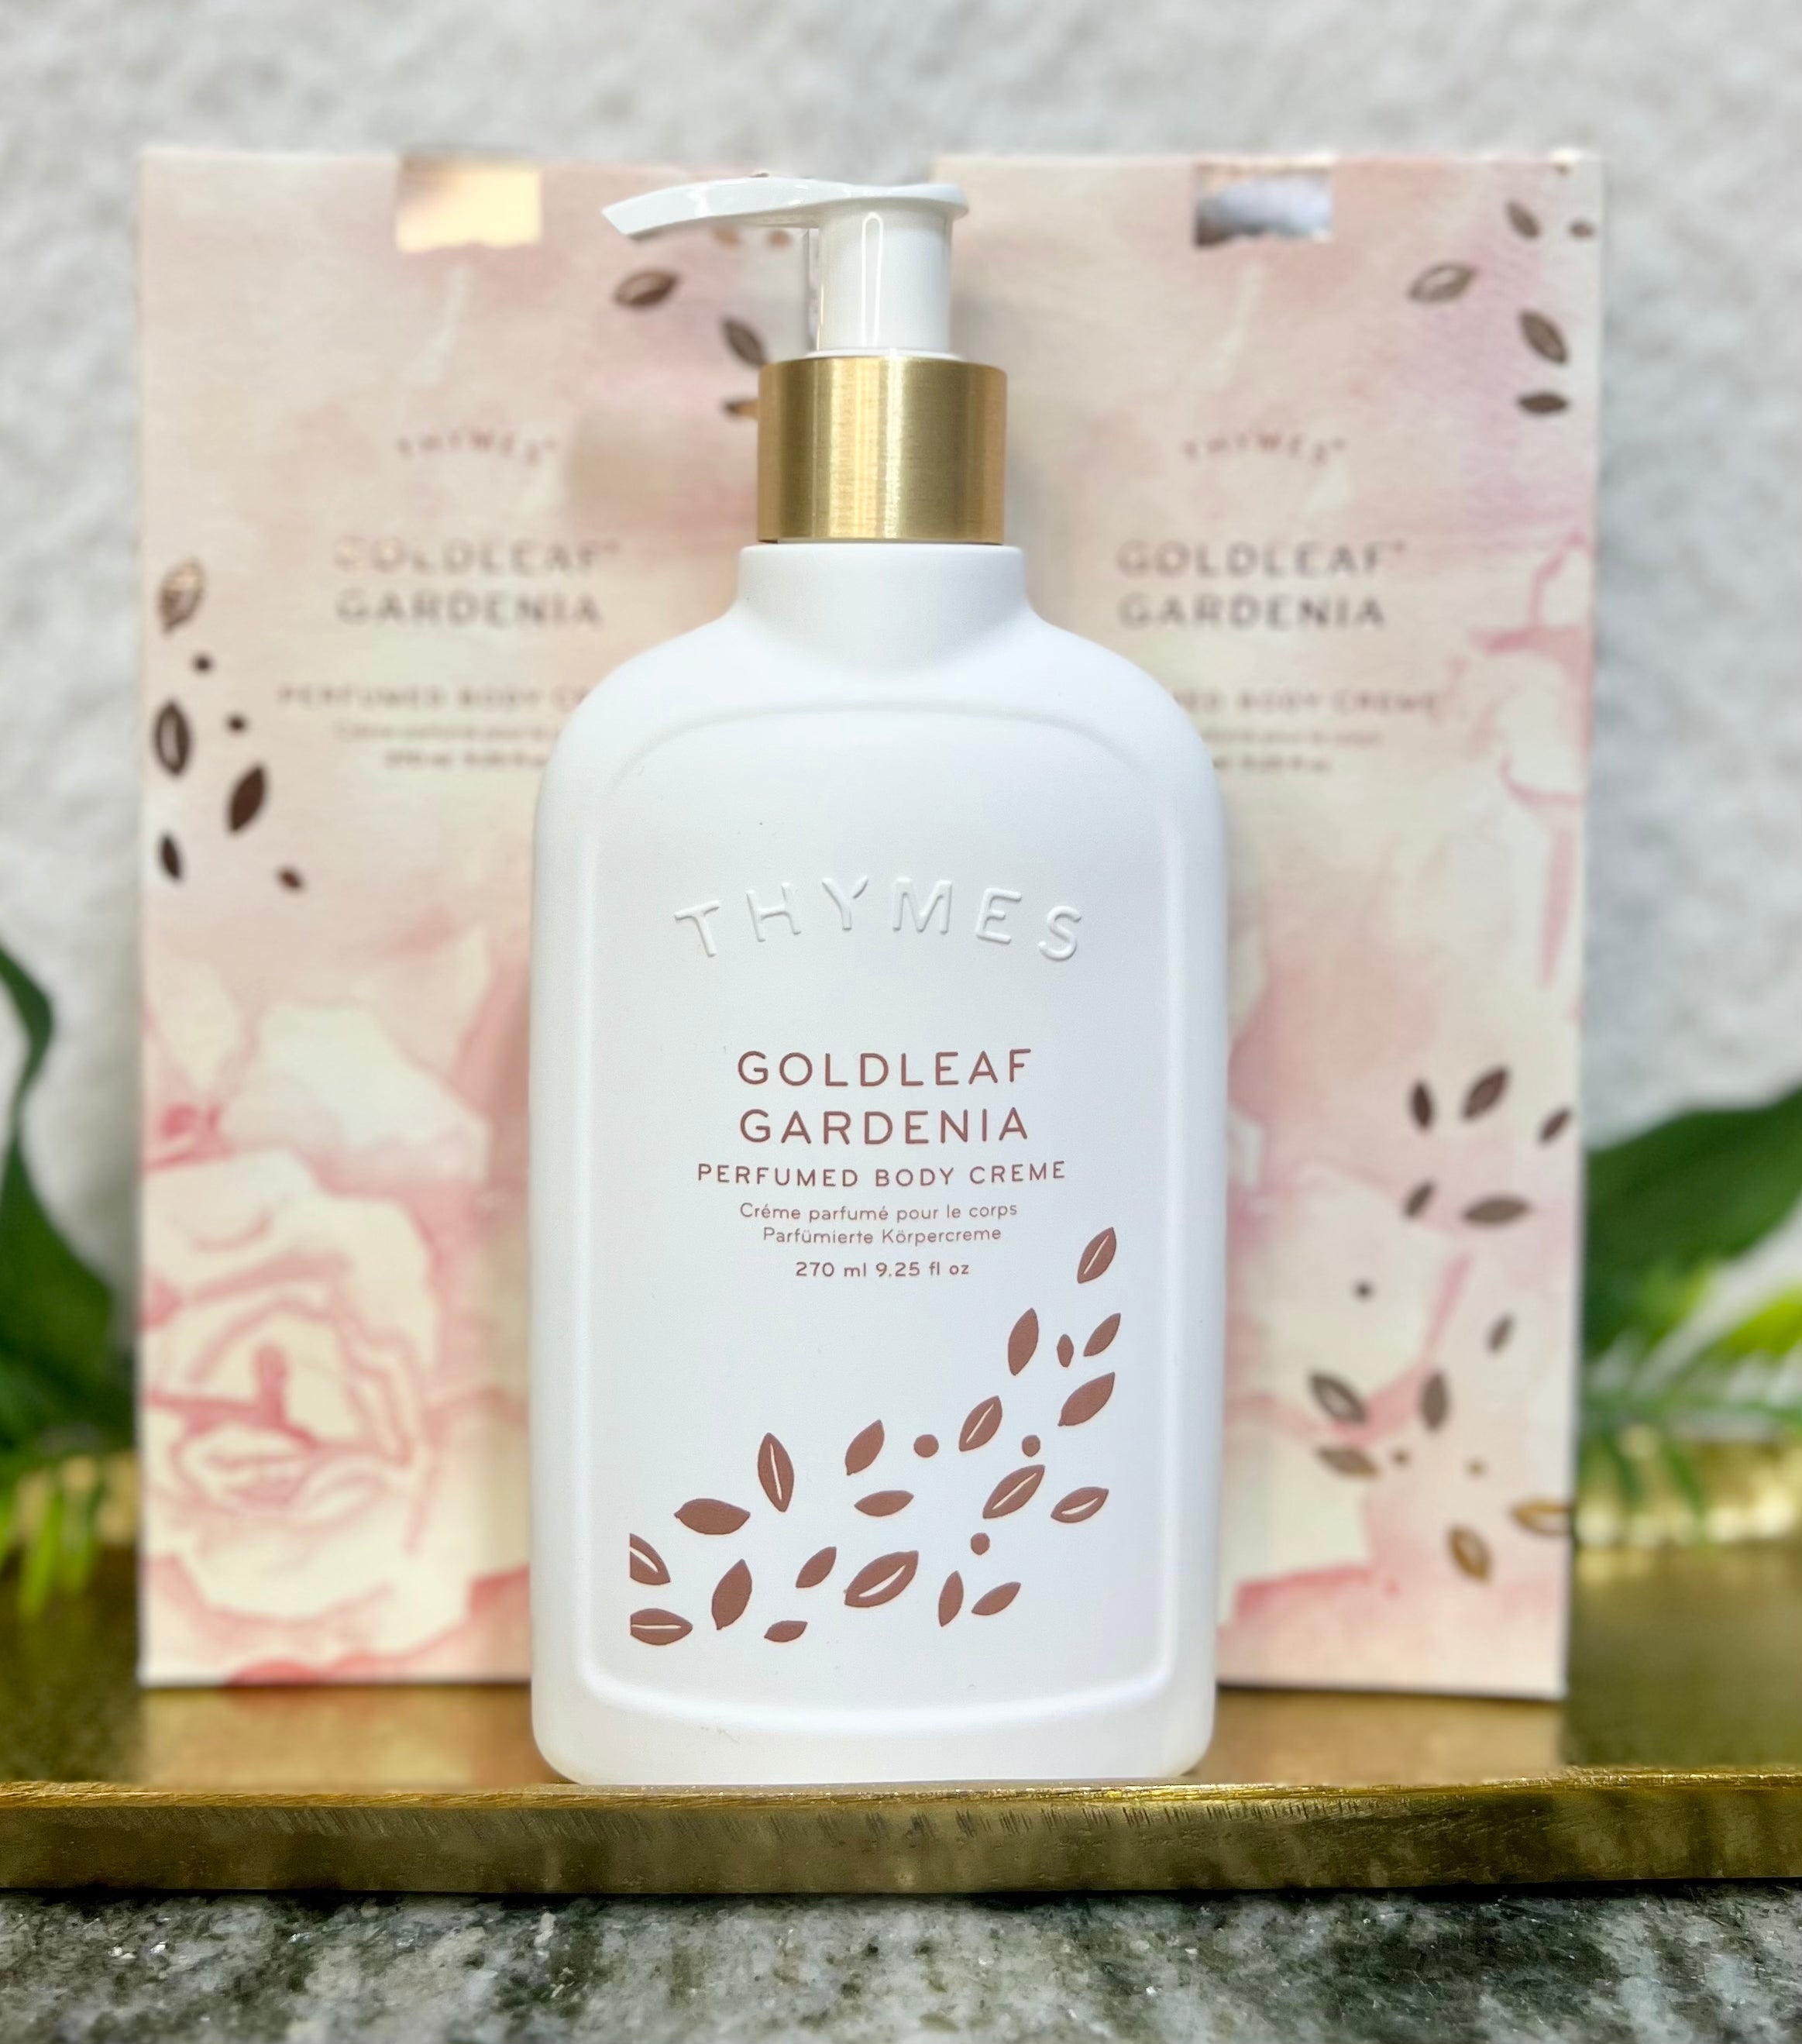 Thymes “Goldleaf Gardenia” body crème